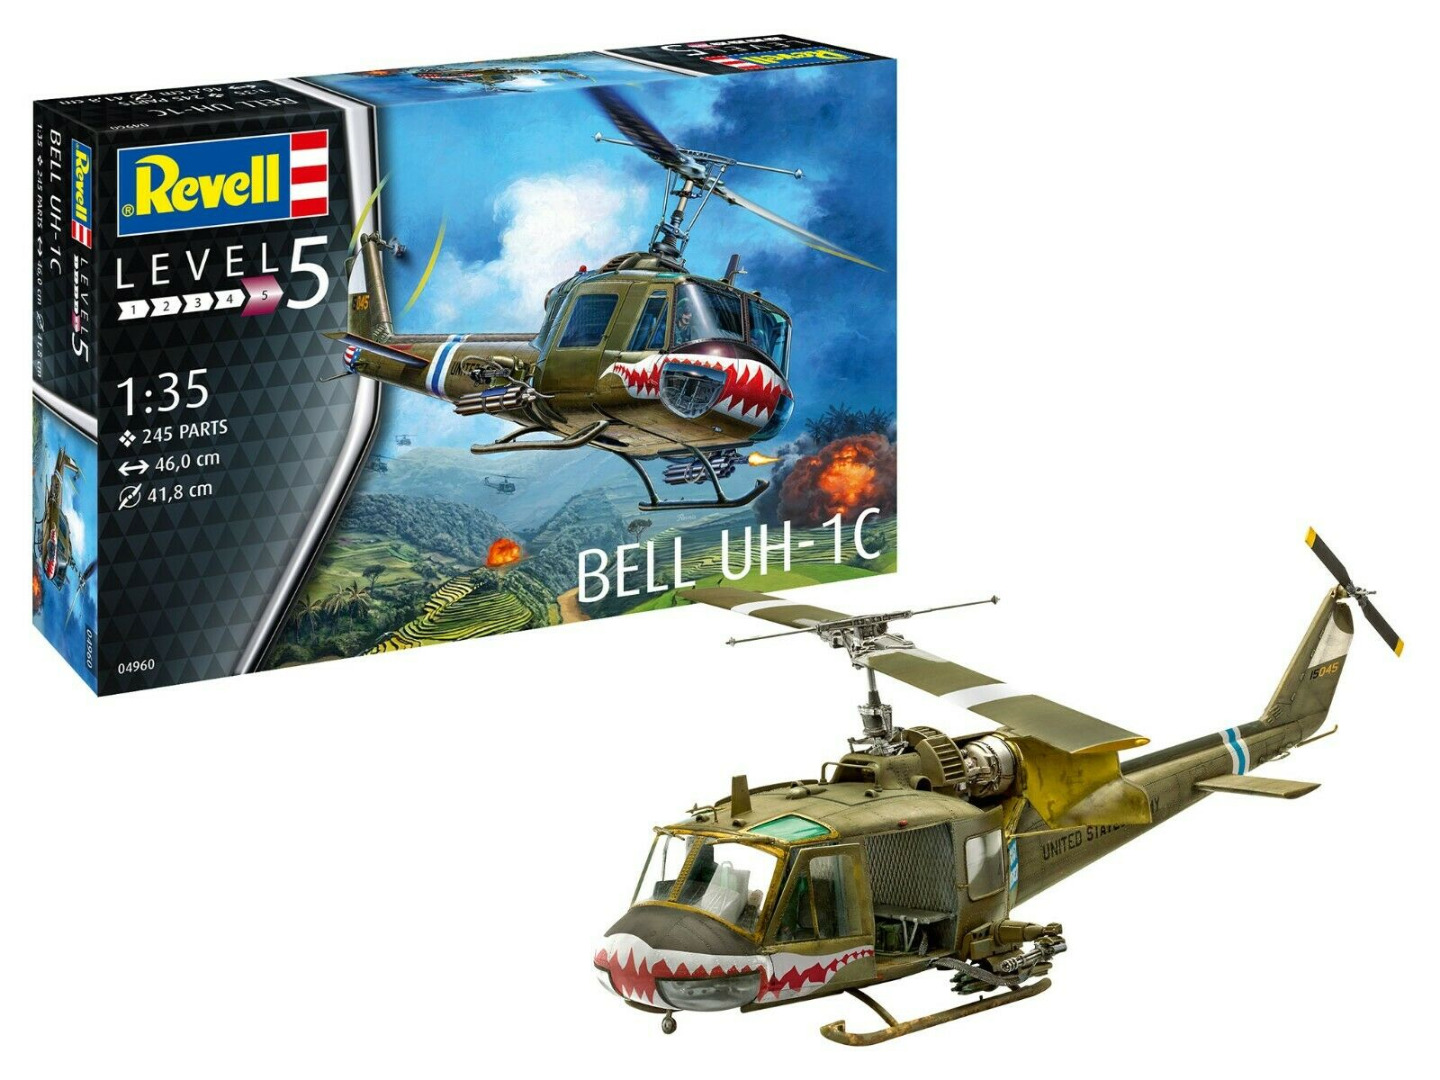 Revell Model Kit Bell UH-1C Scale 1:35